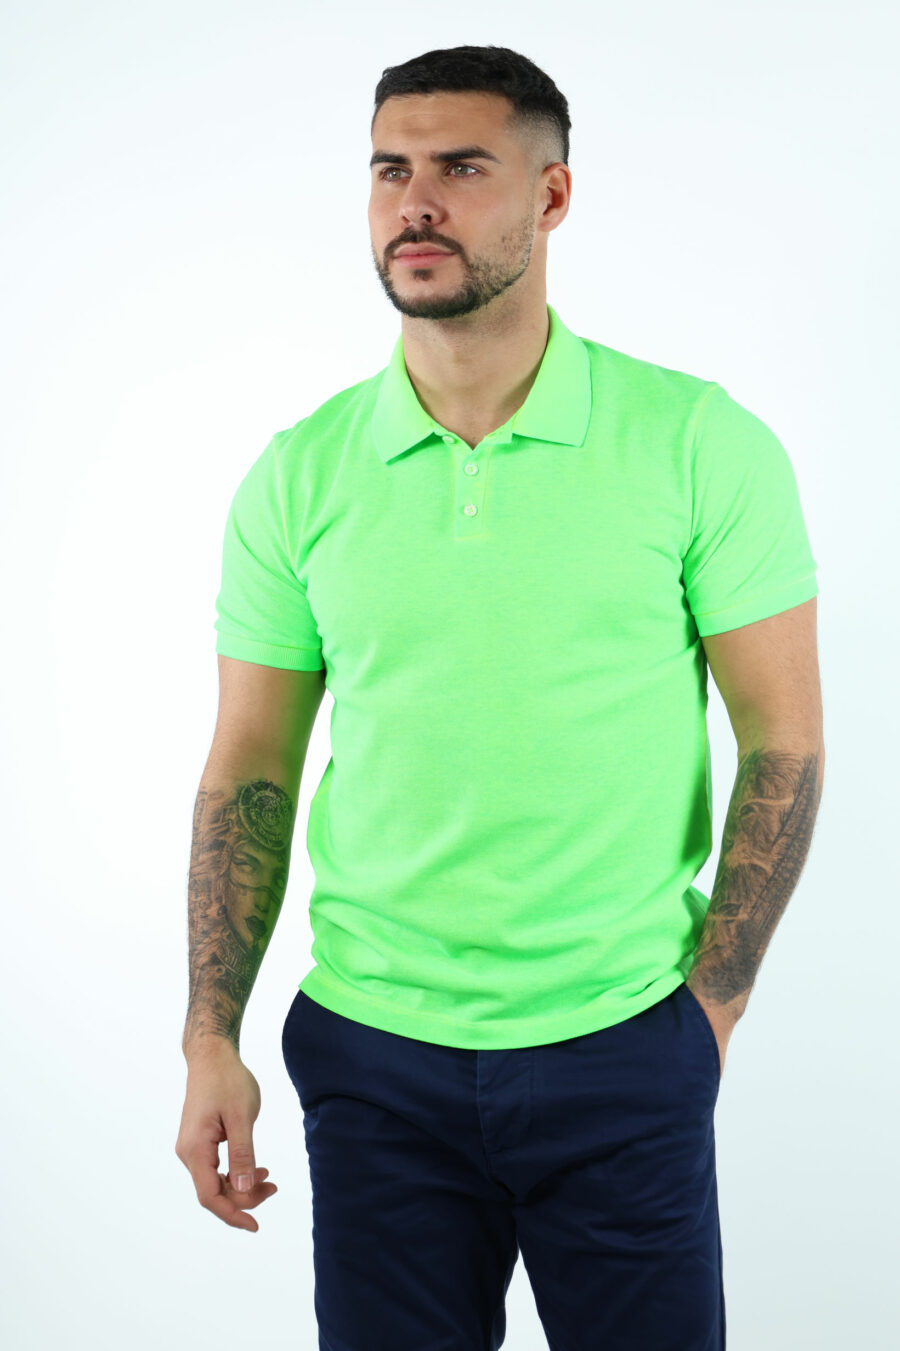 Neongrünes "Tennis Fit" Poloshirt mit "Icon" Logo auf dem Rücken - 106697